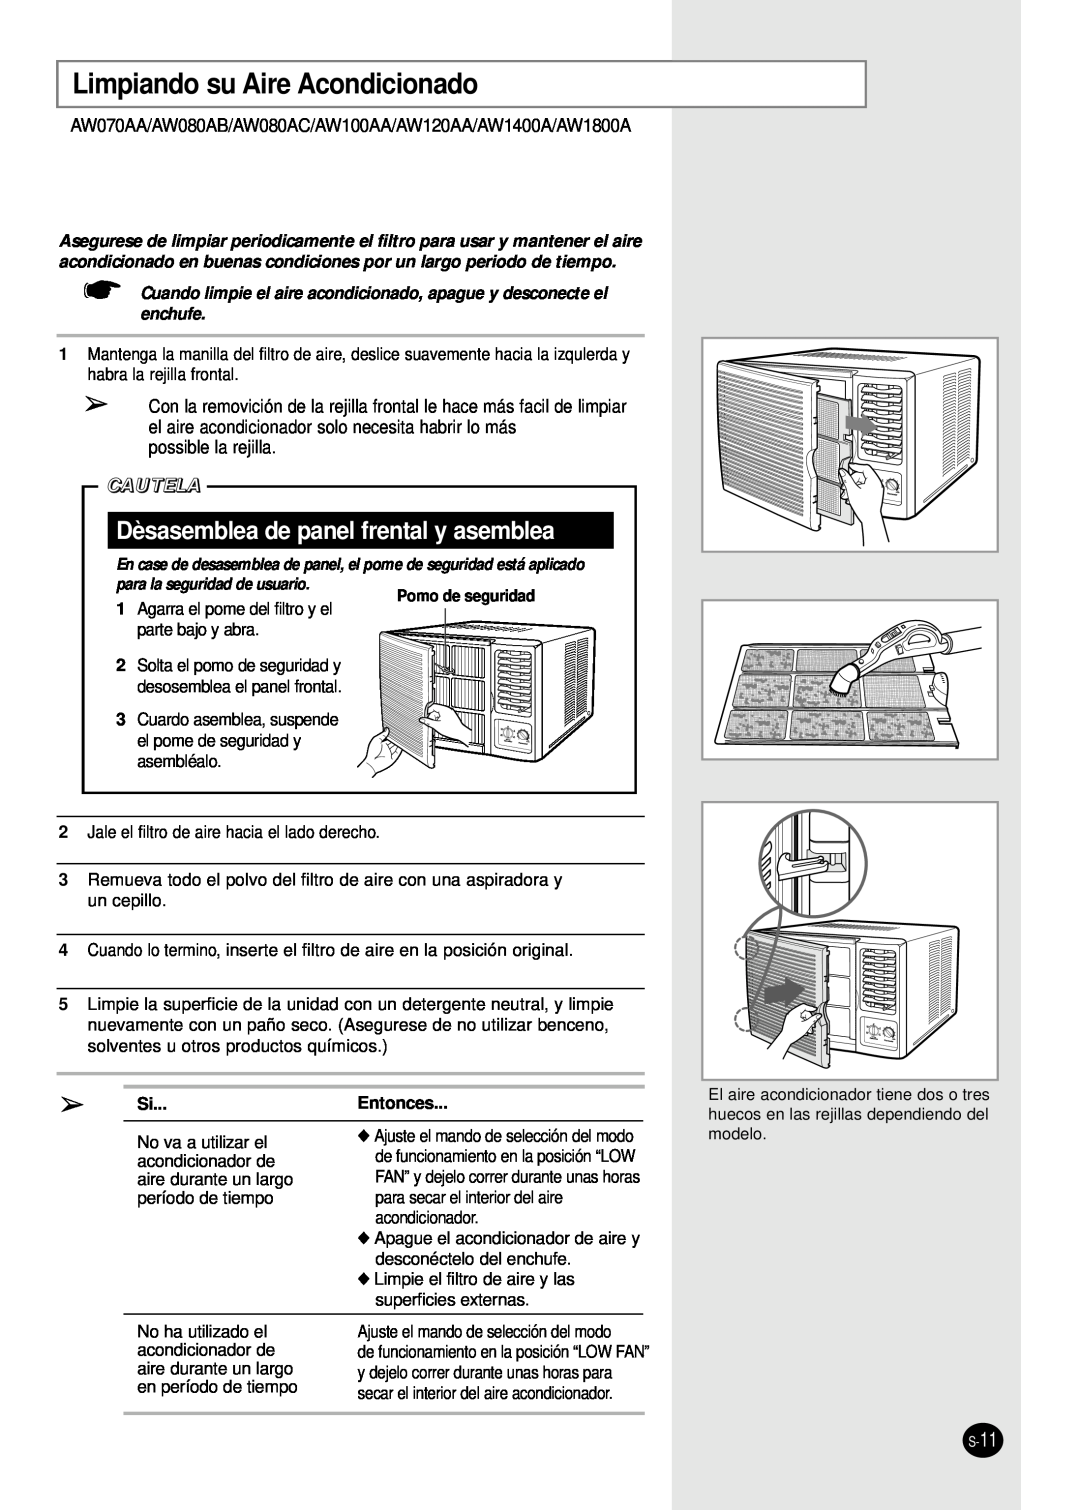 Samsung AW120AA manual Limpiando su Aire Acondicionado, Dèsasemblea de panel frental y asemblea, Cautela, Pomo de seguridad 